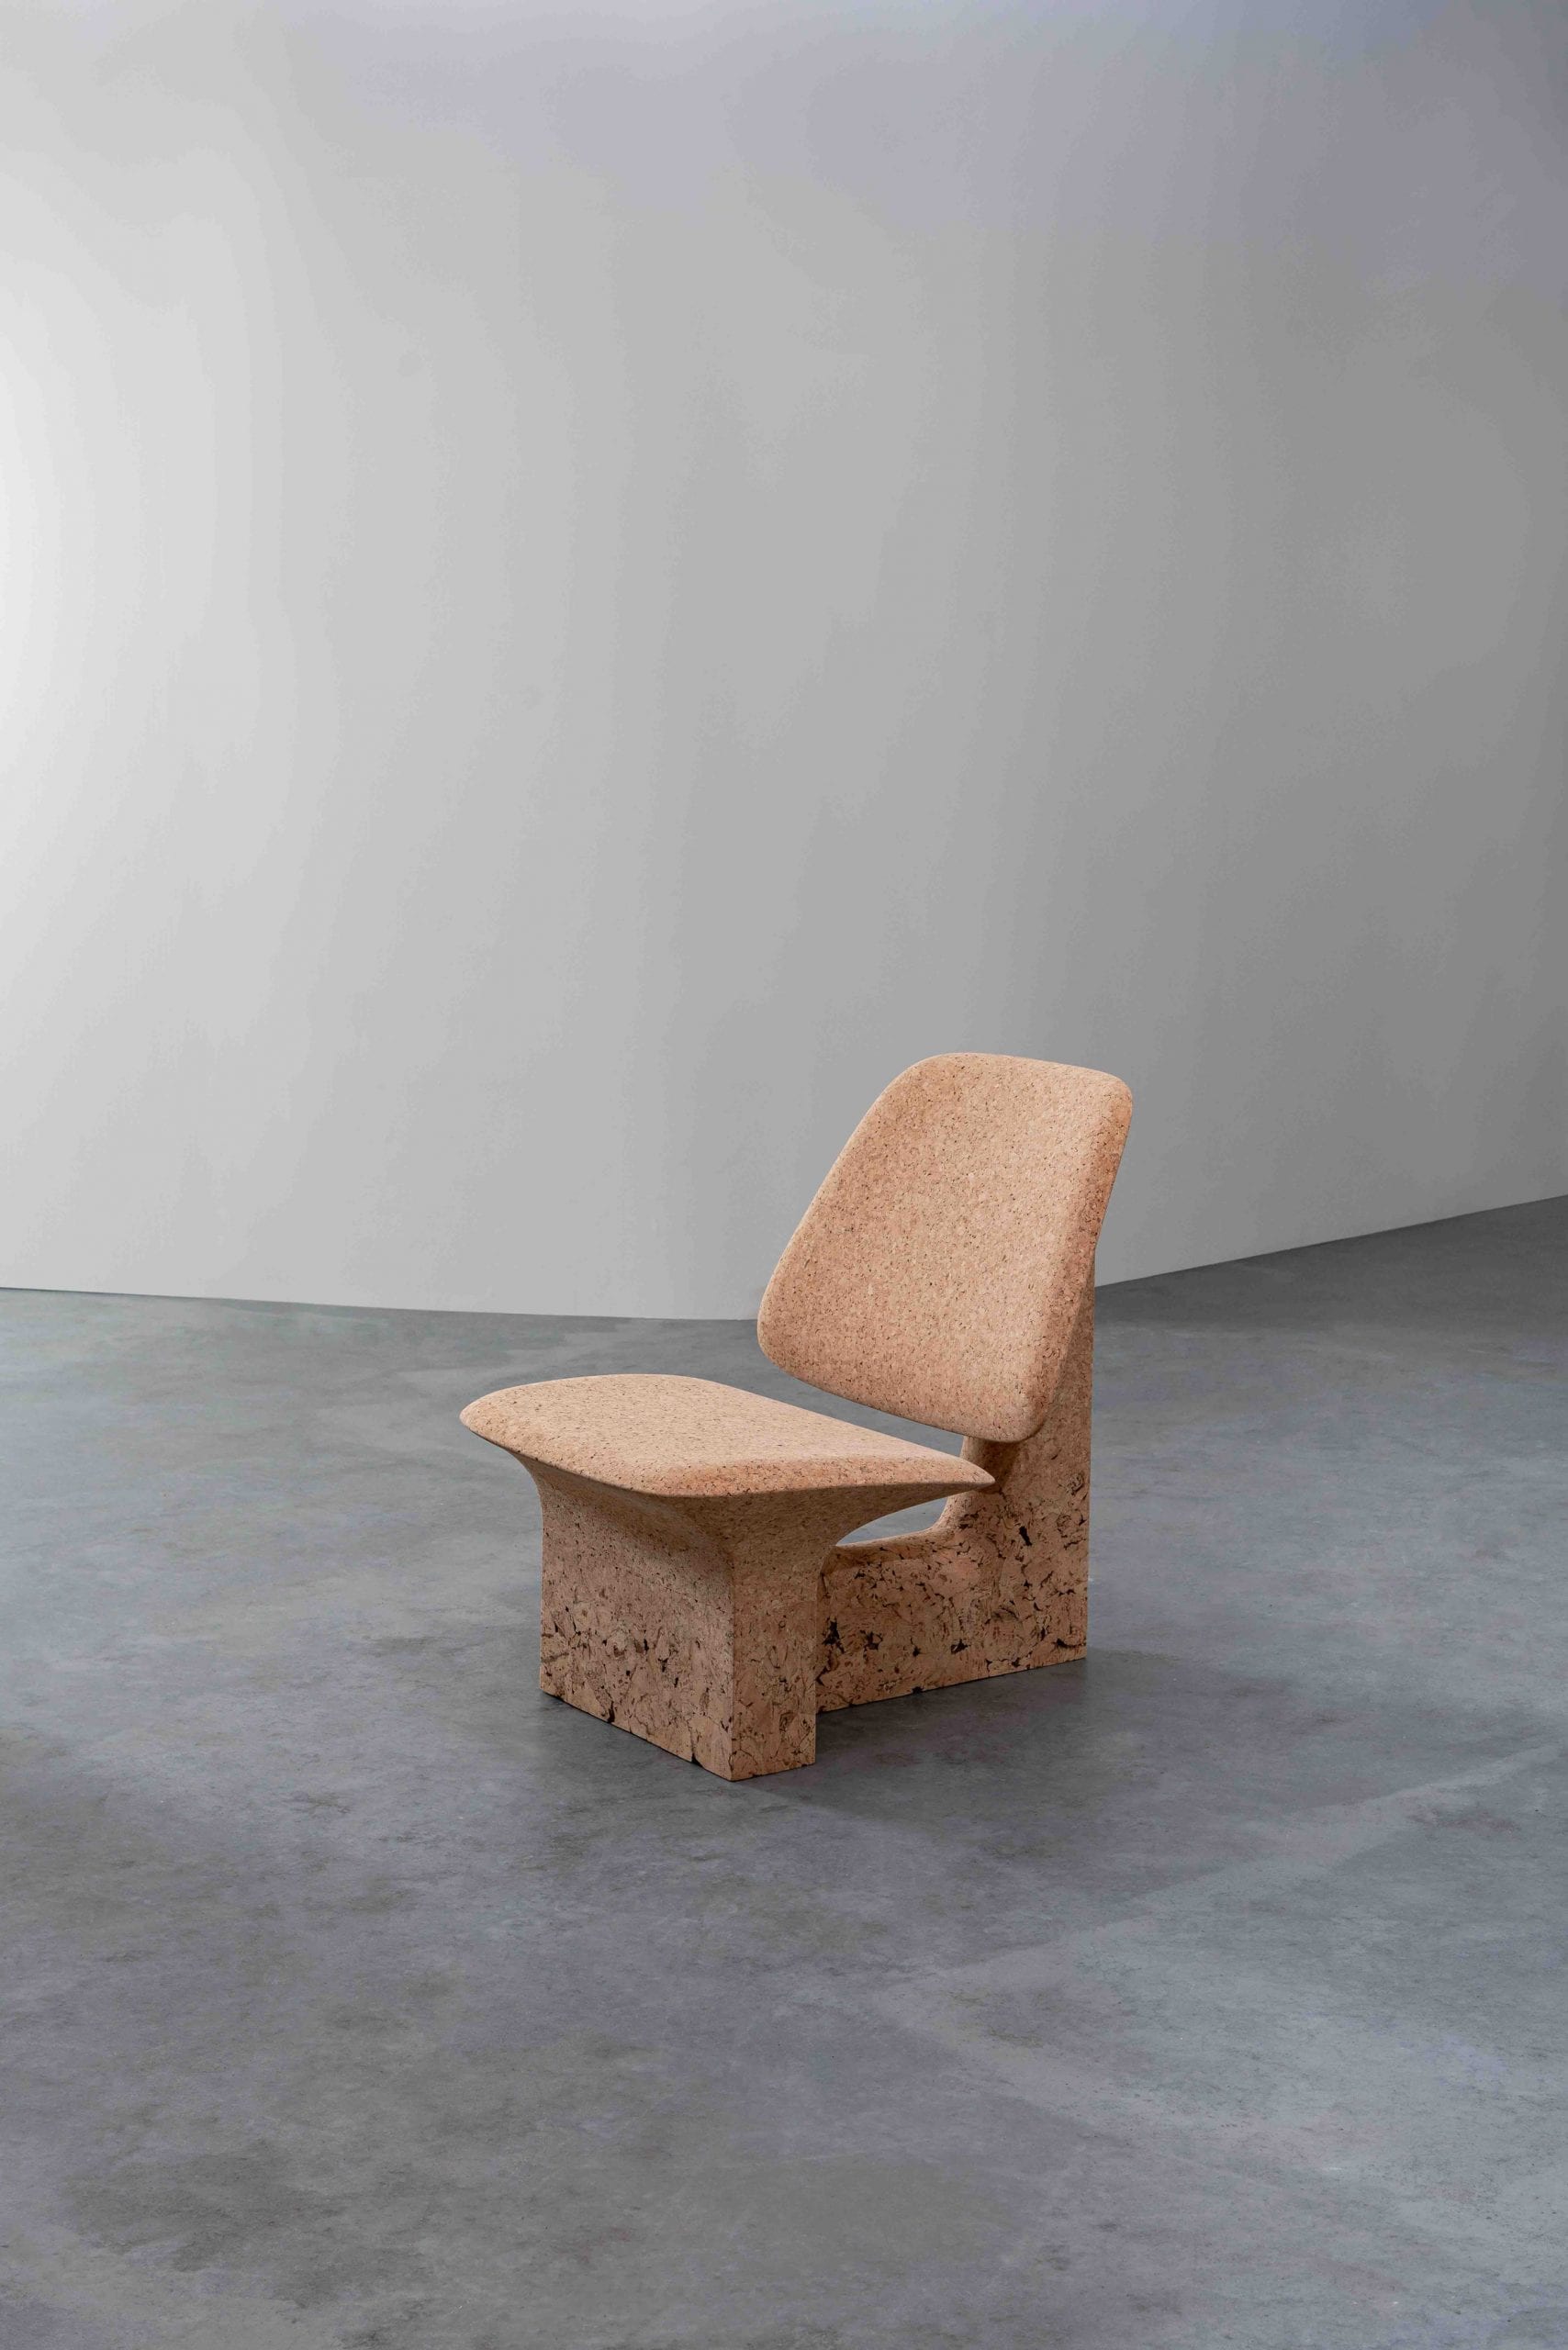 Burnt Cork chair by Noé Duchafour-Lawrance